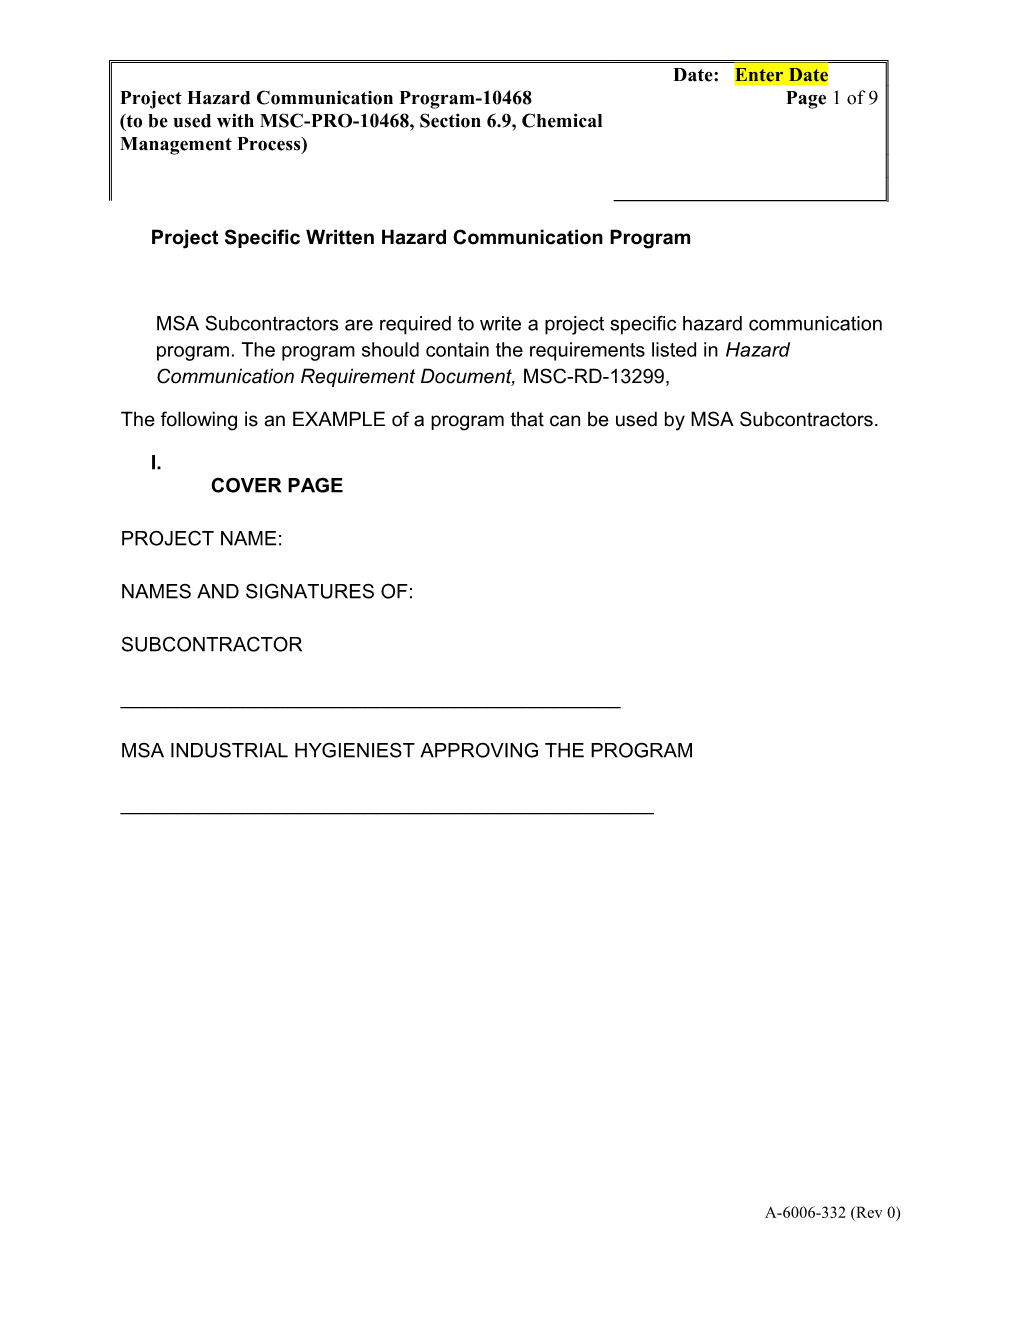 Project Specific Written Hazard Communication Program